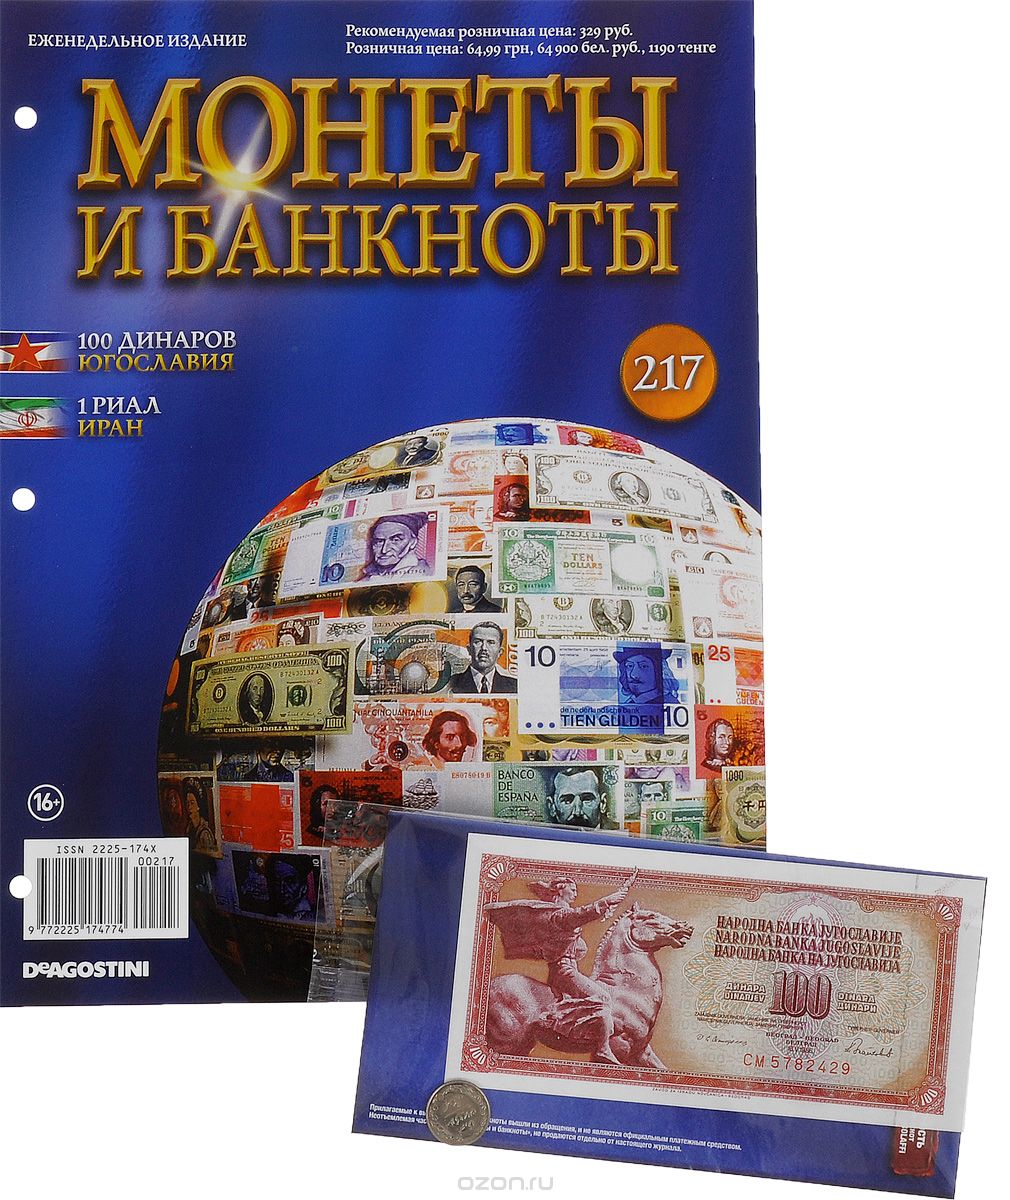 Скачать книгу "Журнал "Монеты и банкноты" №217"